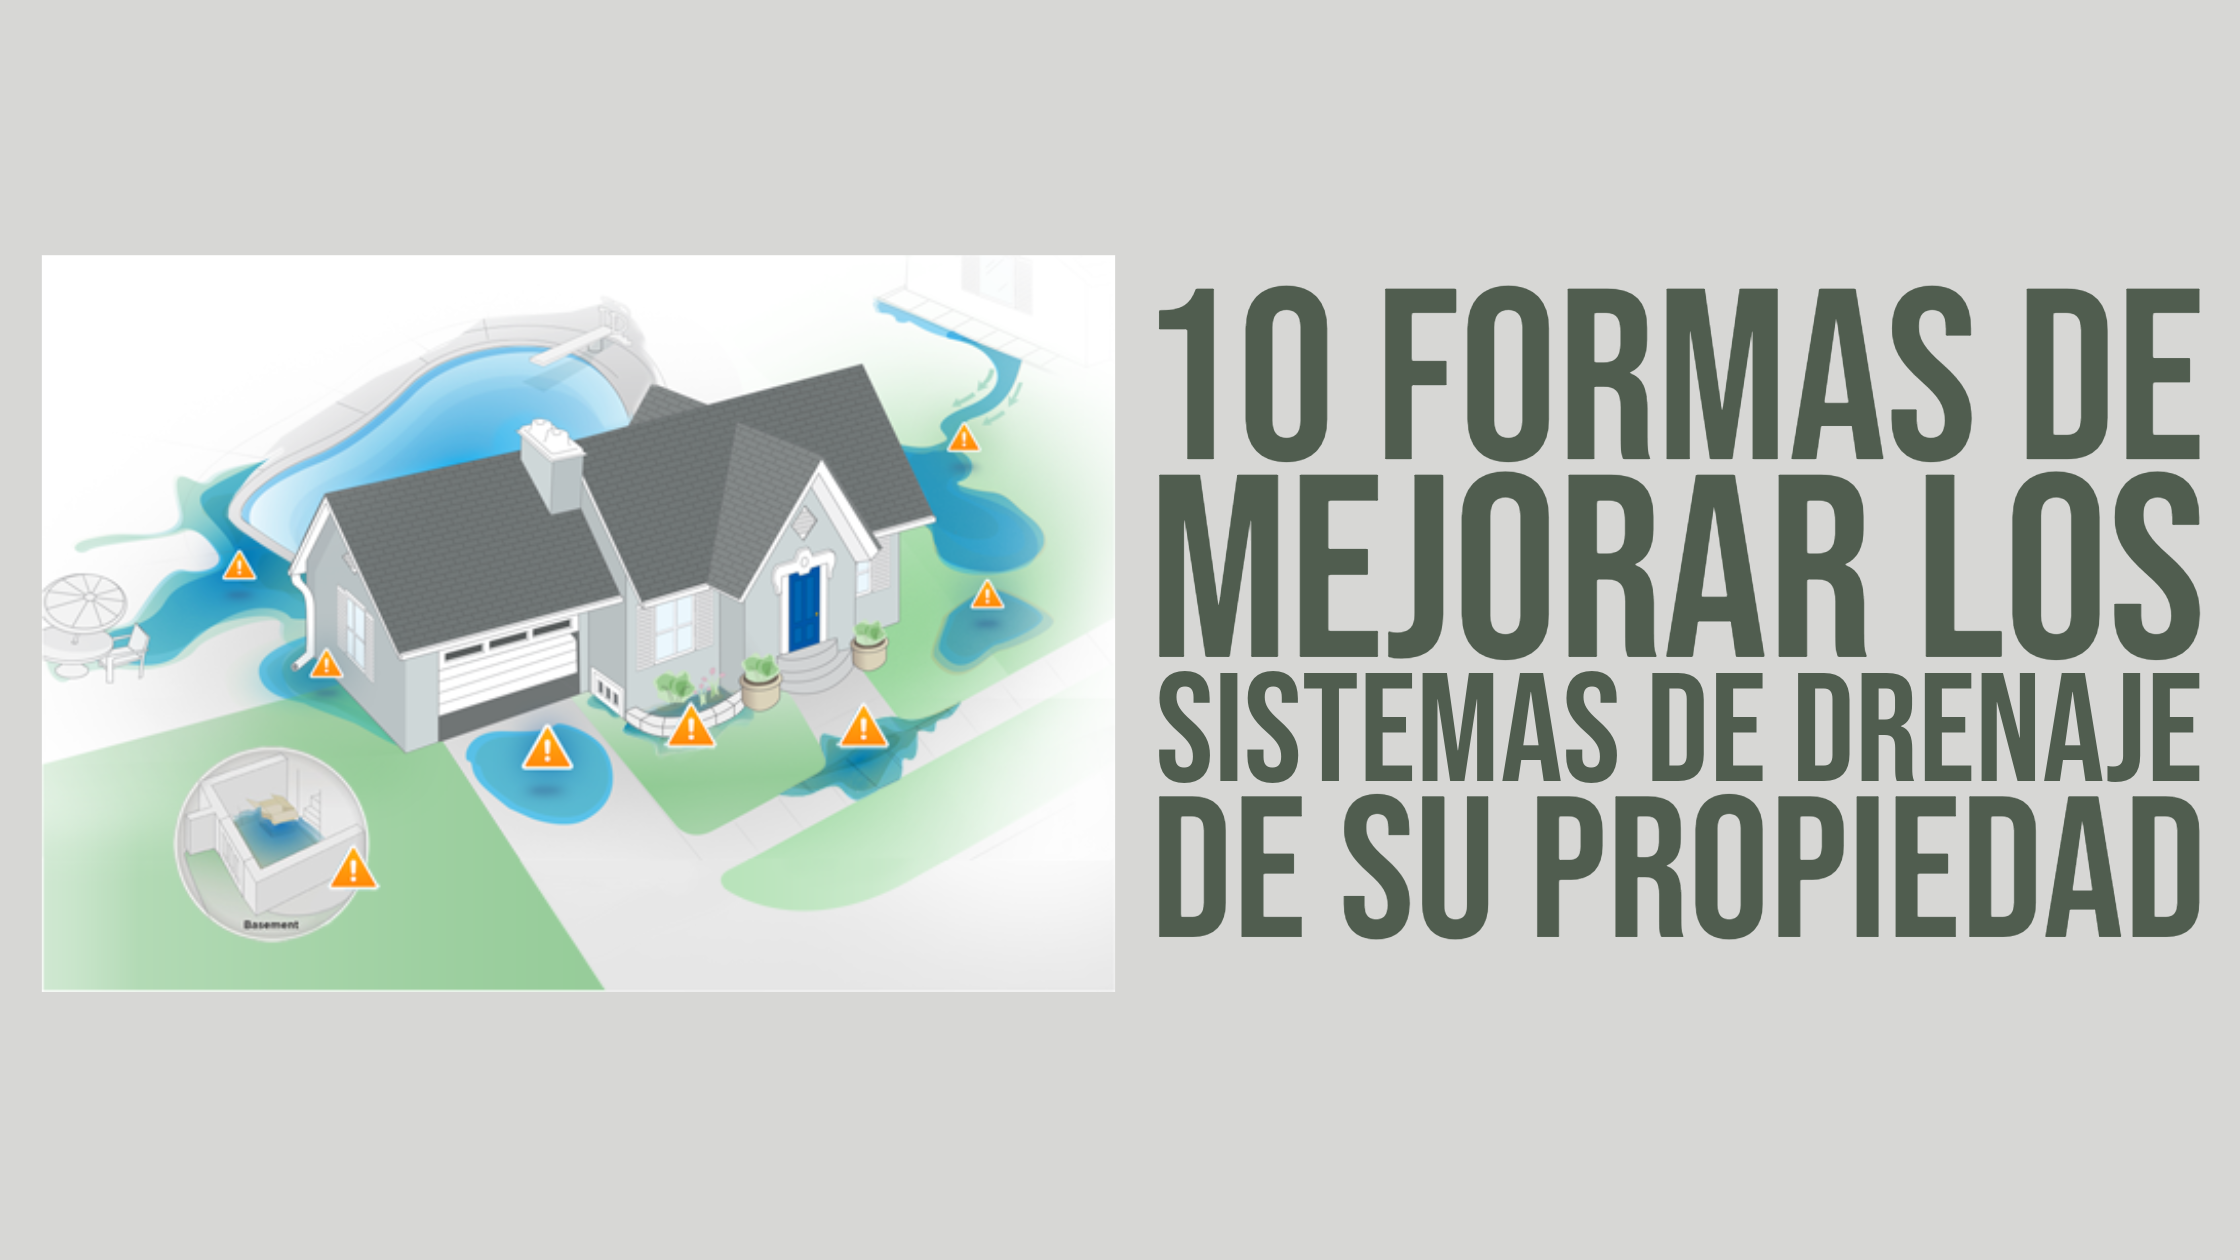 10 Formas de Mejorar los Sistemas de Drenaje de su Propiedad